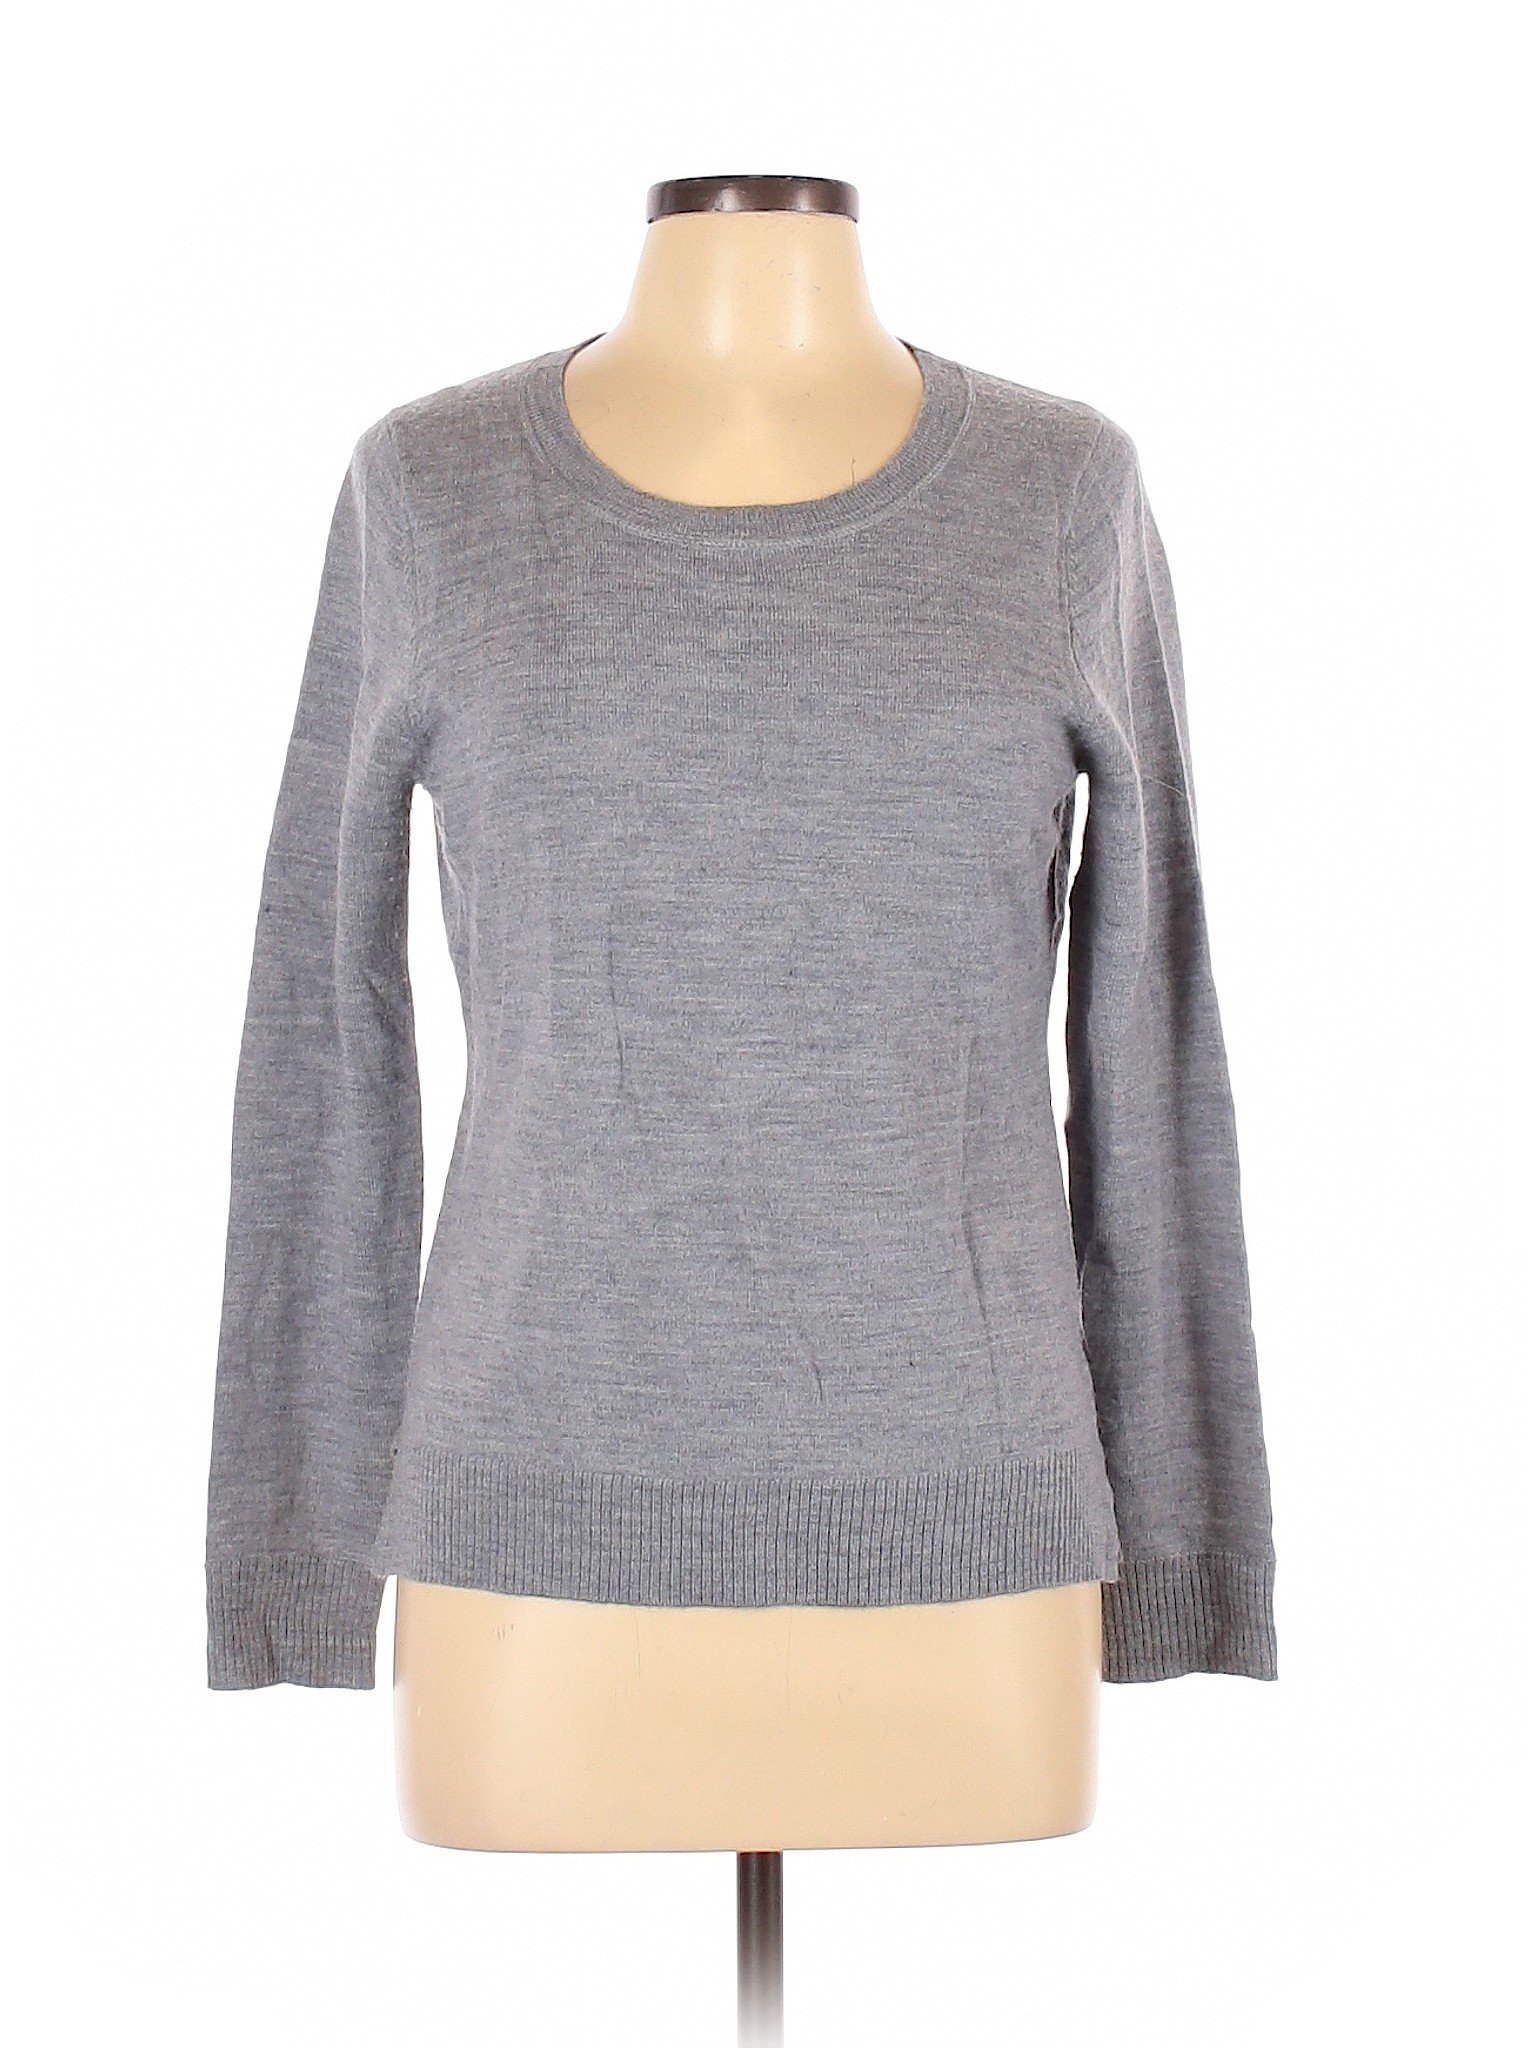 Ellen Tracy Women Gray Wool Pullover Sweater L | eBay